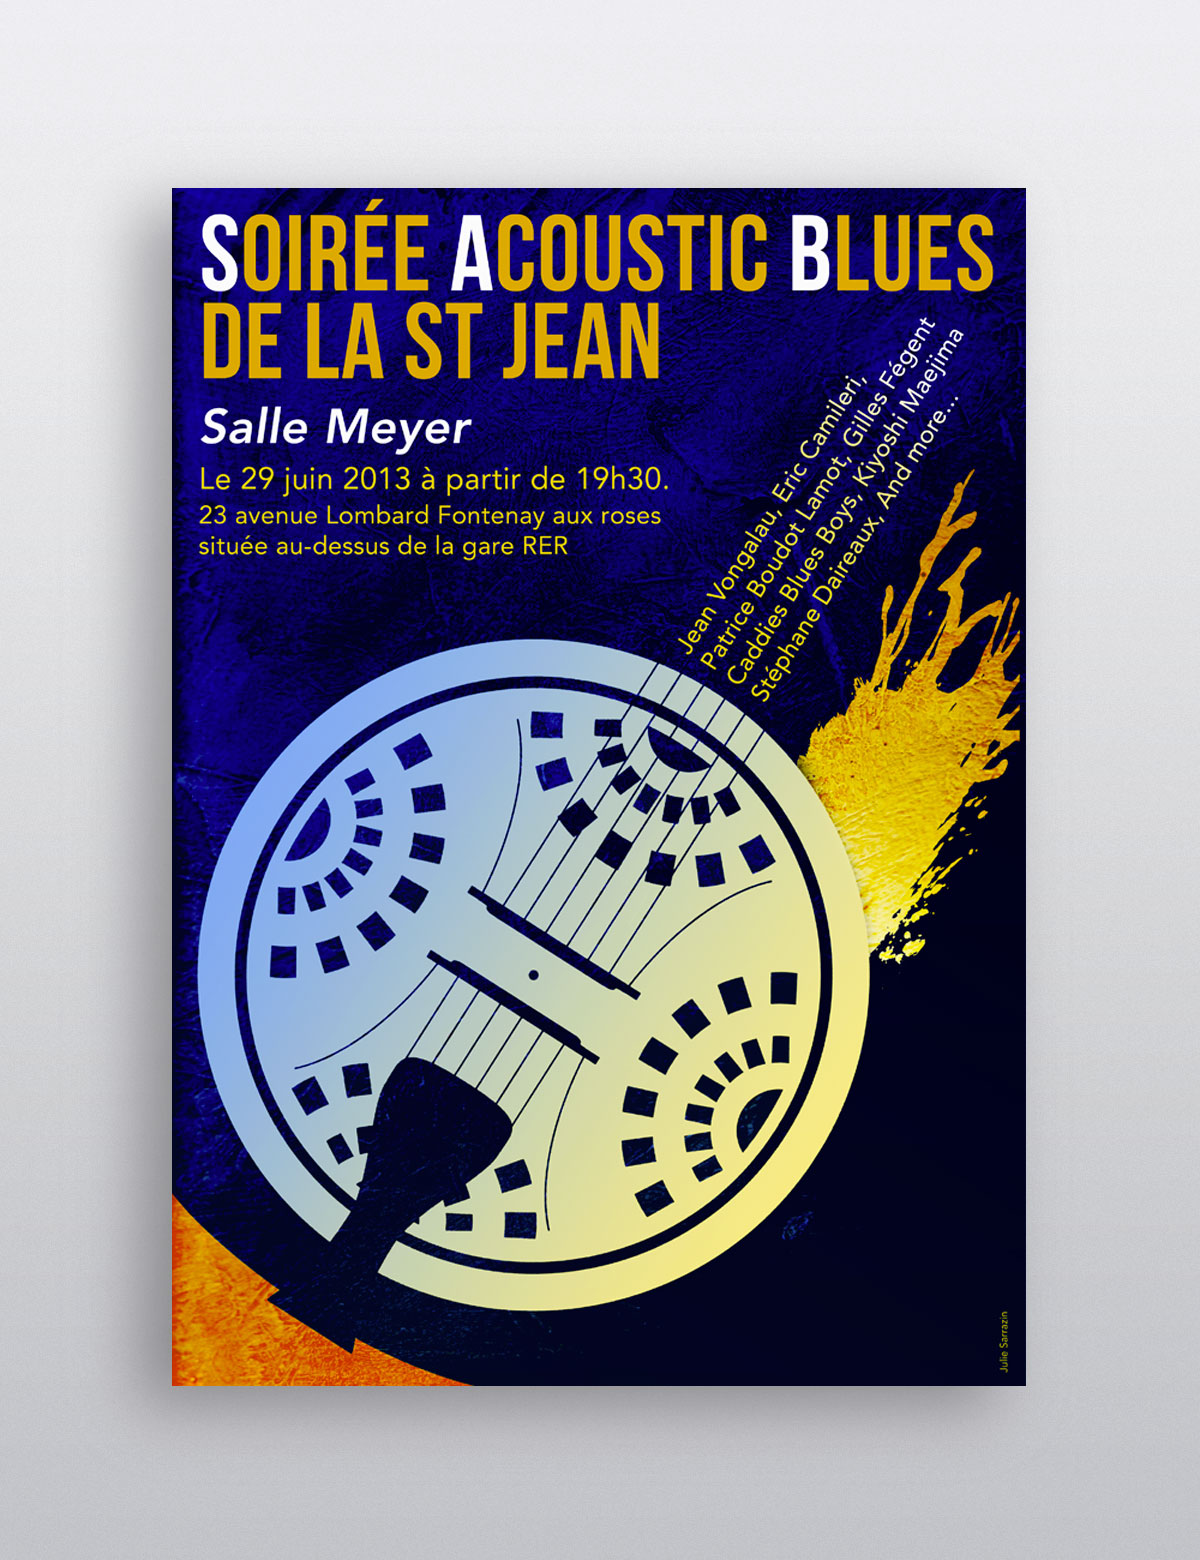 Visuel d'une affiche pour une soirée acoustic blues de la saint Jean illustrée d'une caisse de (...)